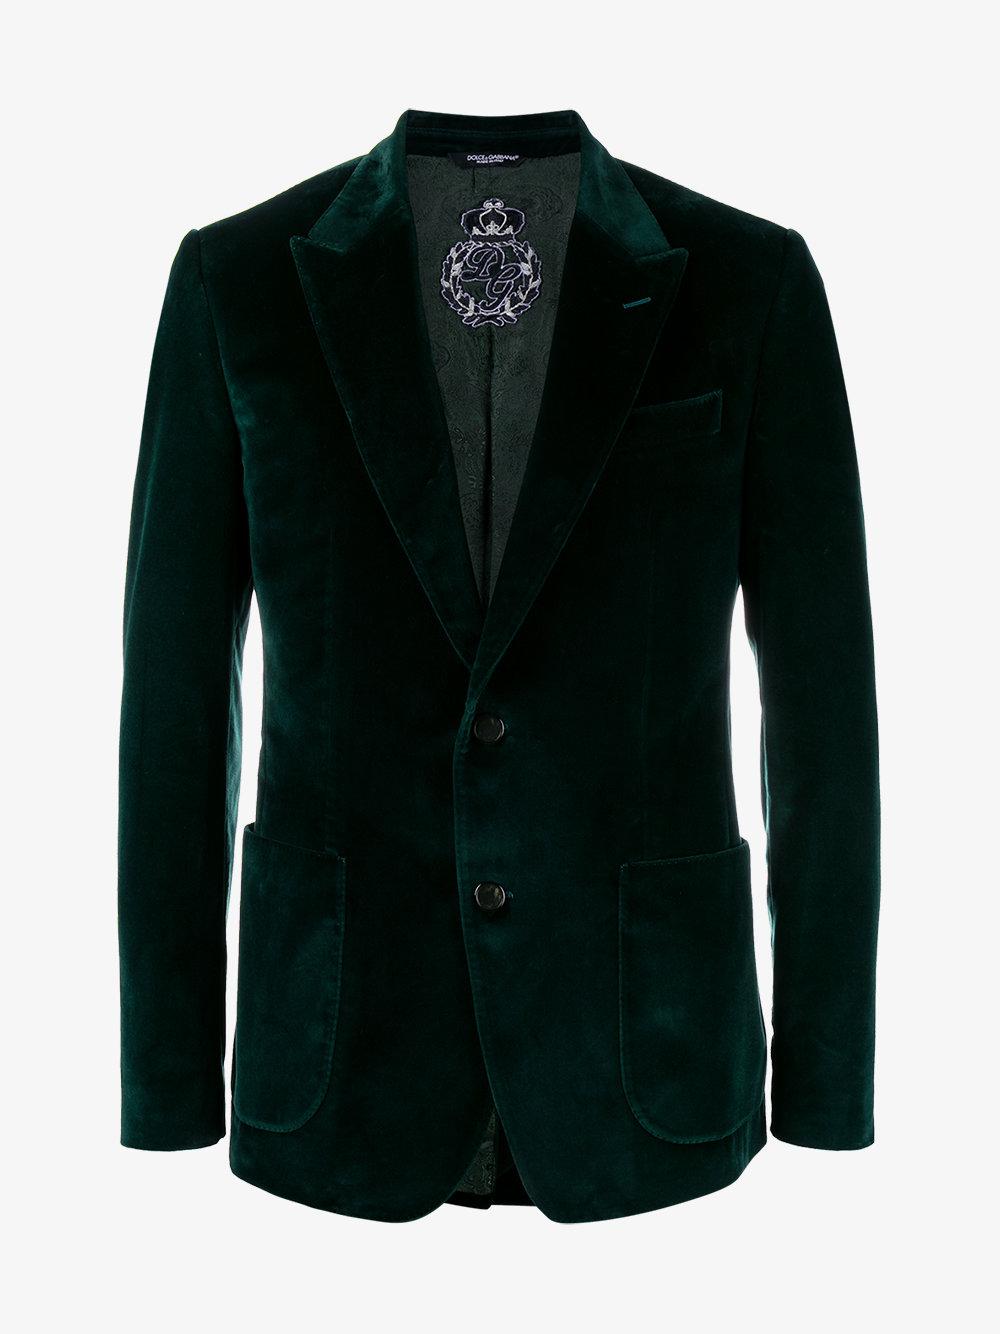 Dolce & Gabbana Emerald Green Velvet Blazer for Men - Lyst